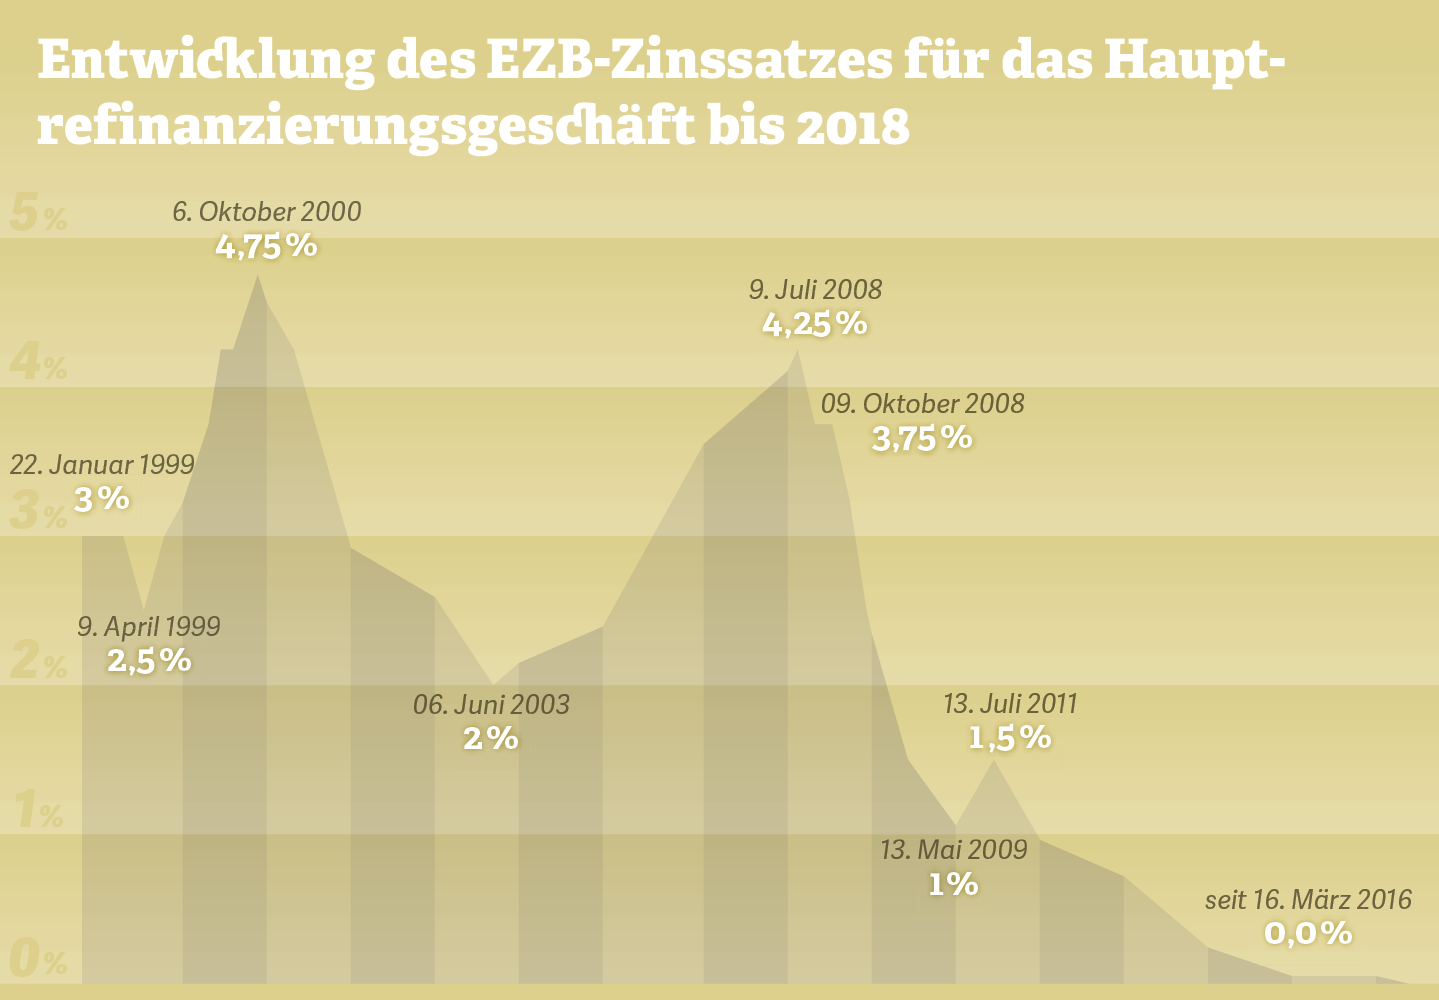 Grafik: Entwicklung des EZB-Zinssatzes für das Hauptrefinanzierungsgeschäft bis 2018. Quelle: EZB, 2018